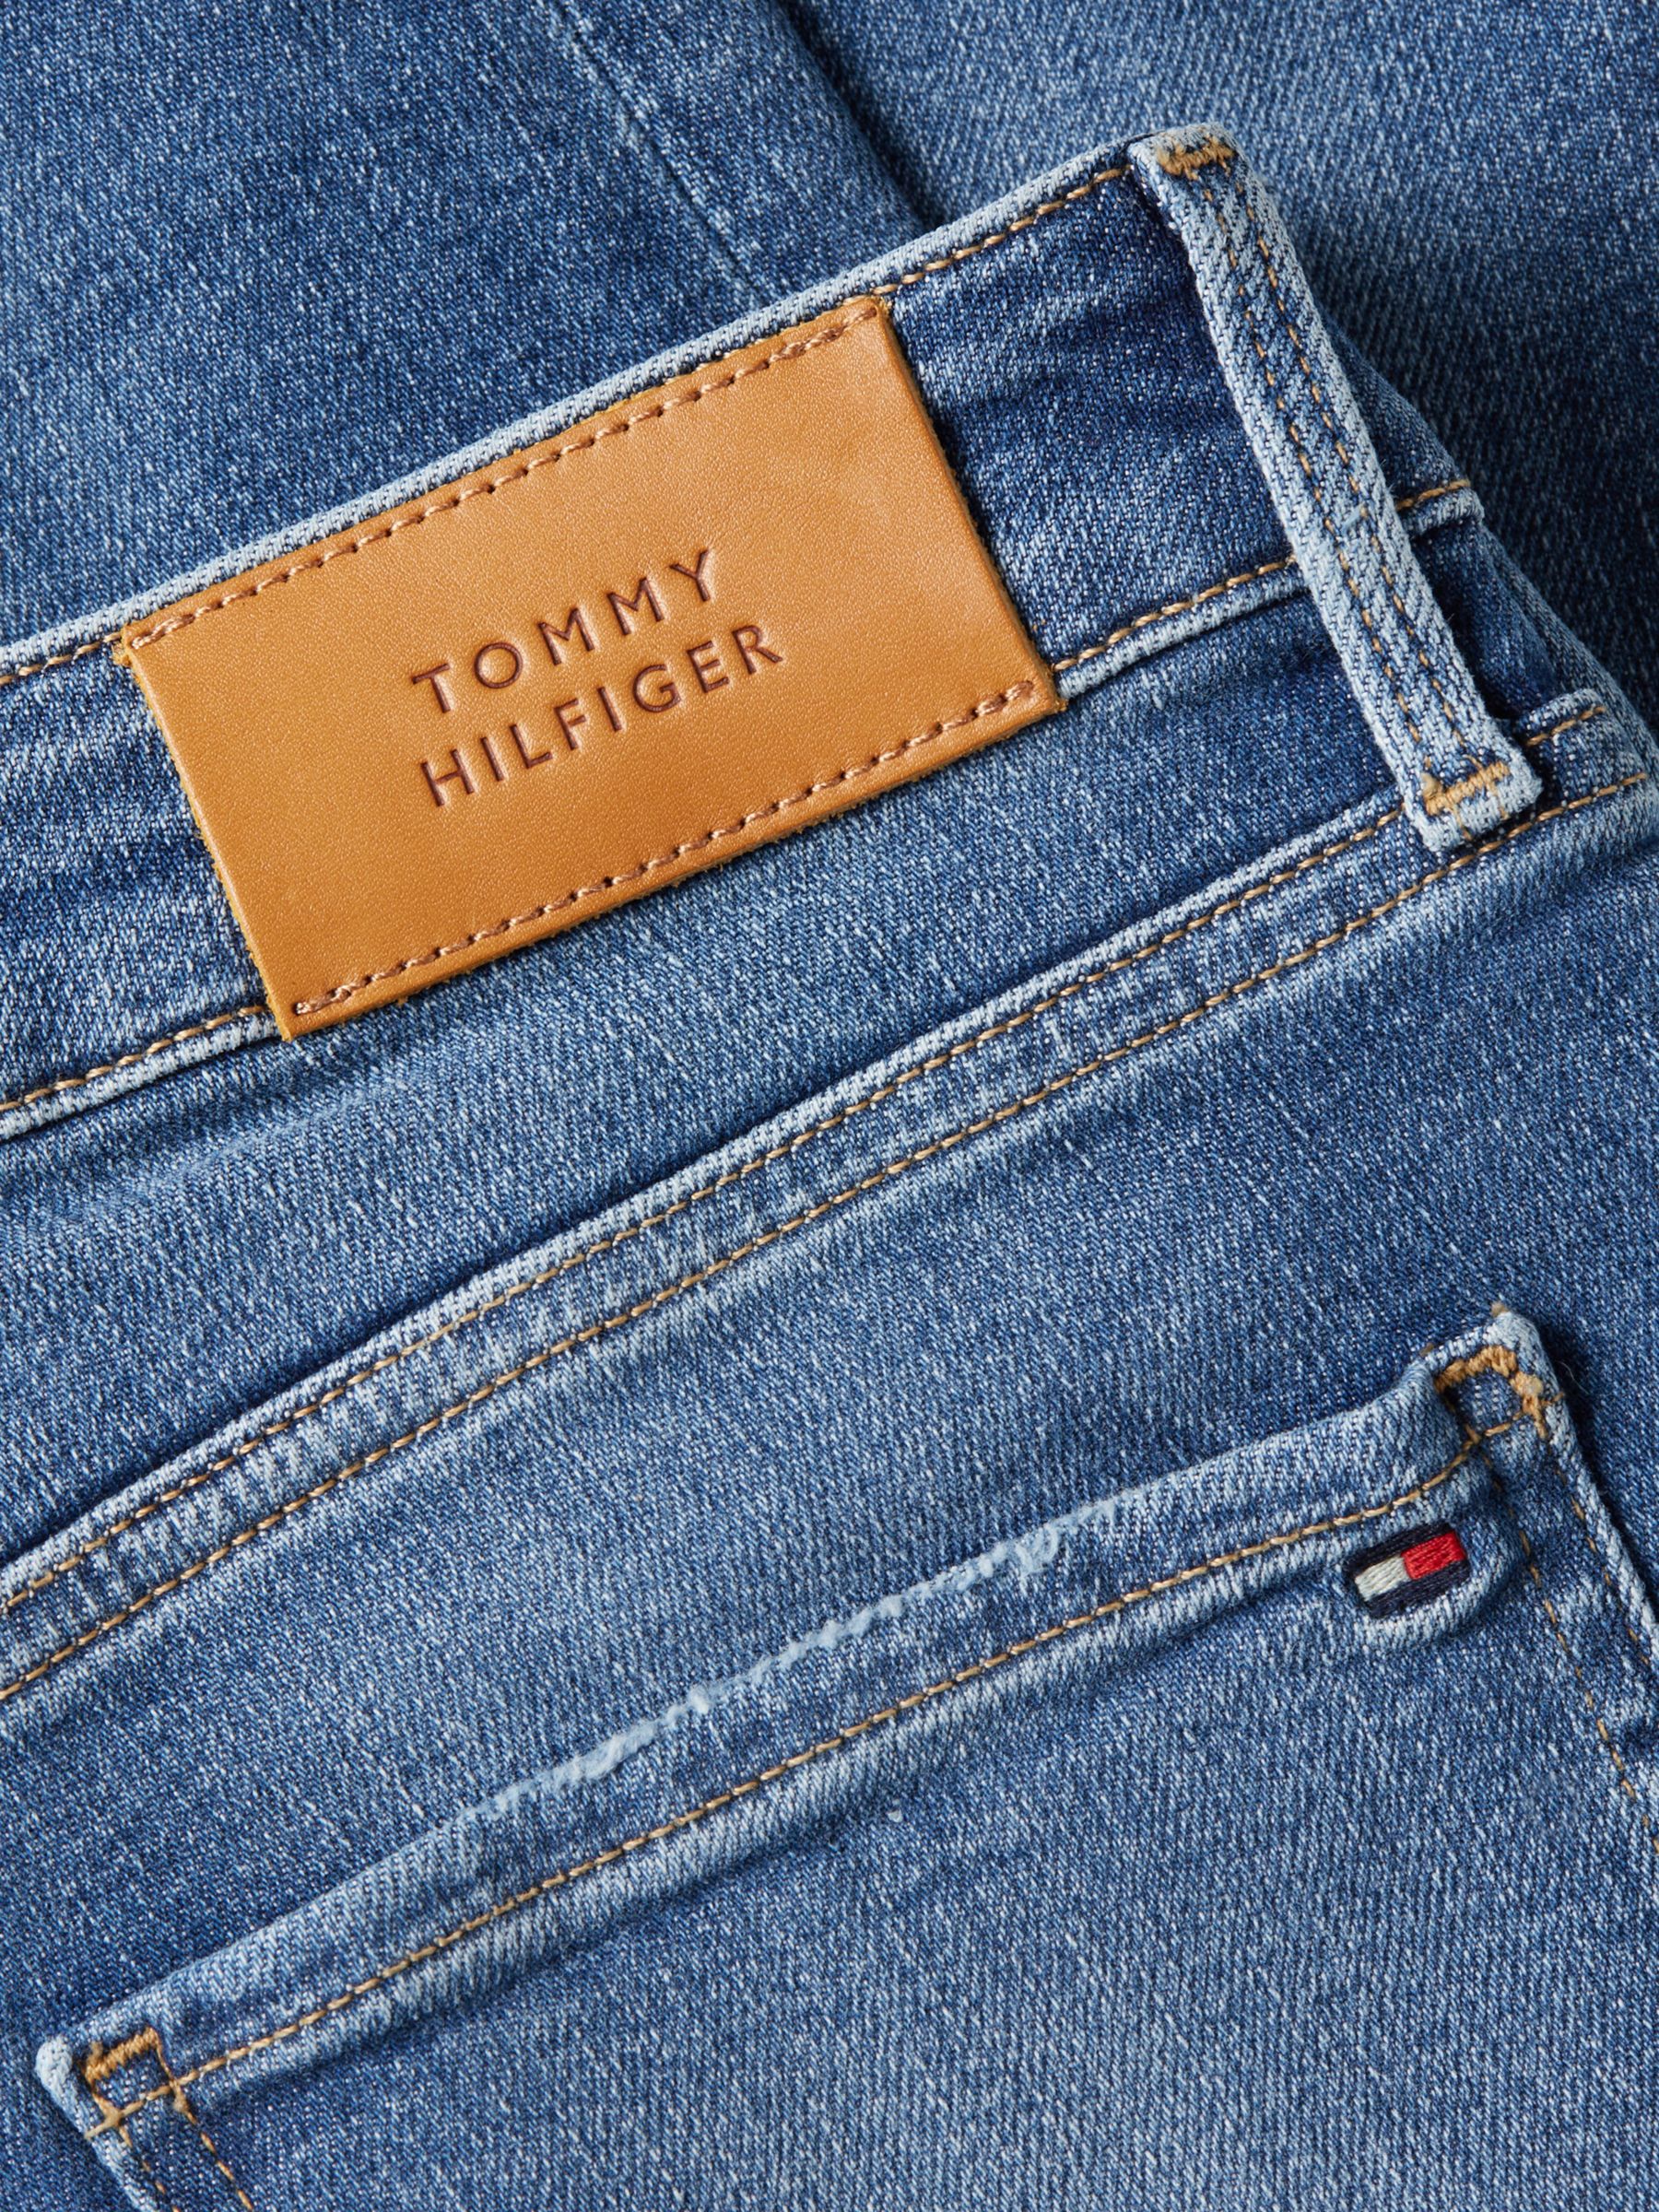 Tommy Hilfiger Curve Harlem High Leo Skinny & Jeans, Partners Rise at Lewis John